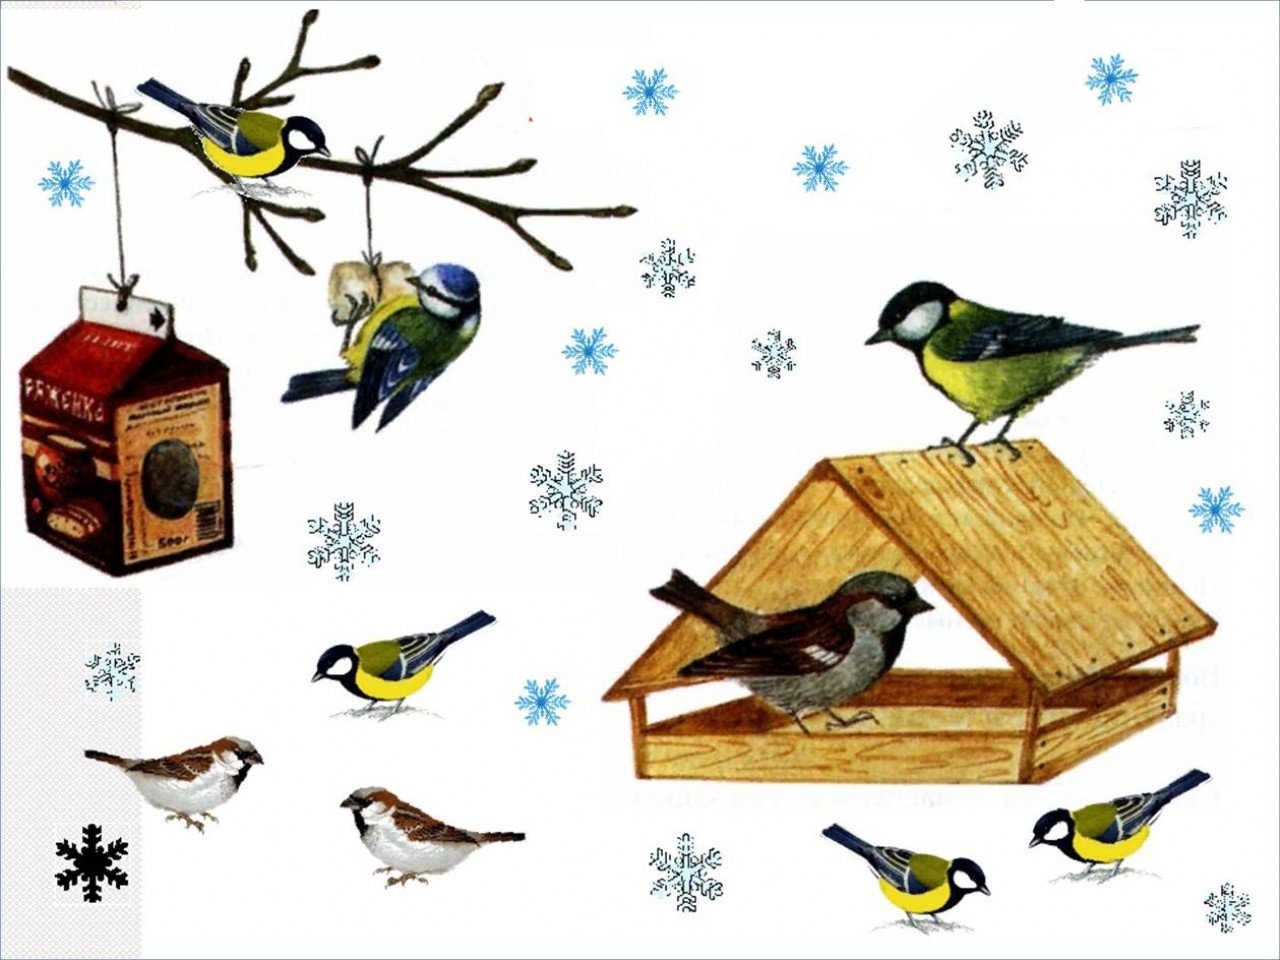 Акция Покормите птиц зимой